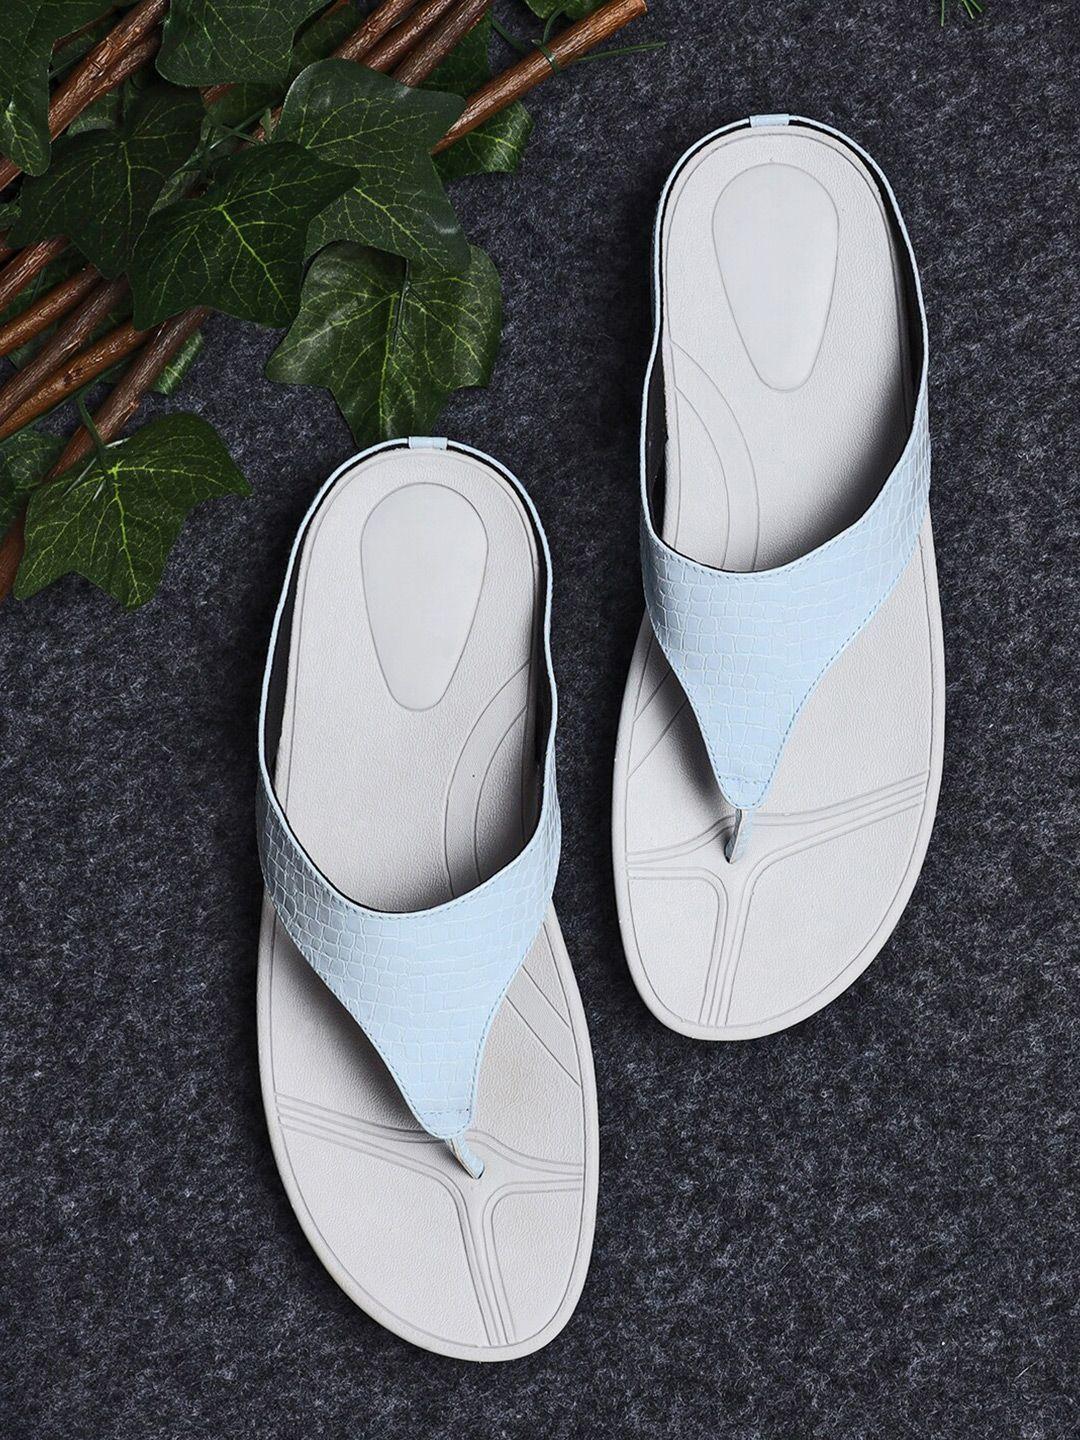 v-walk-textured-open-toe-comfort-heels